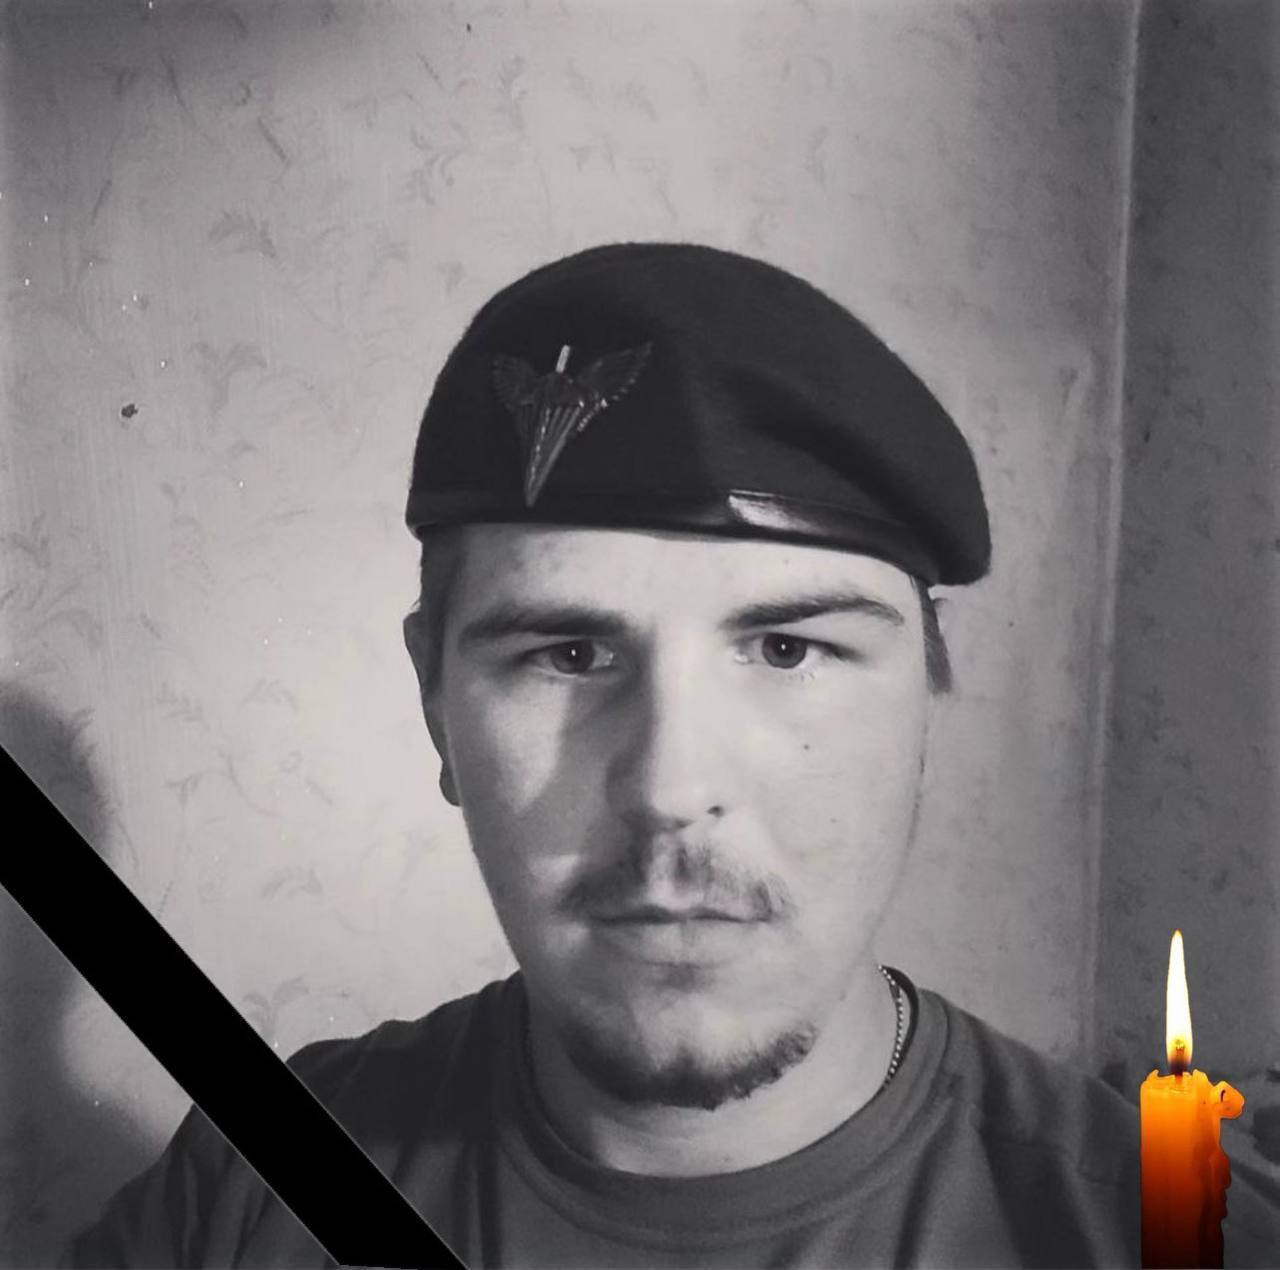 "Війна забрала мрії": у боях на Донеччині загинув 19-річний захисник із Запорізької області. Фото 